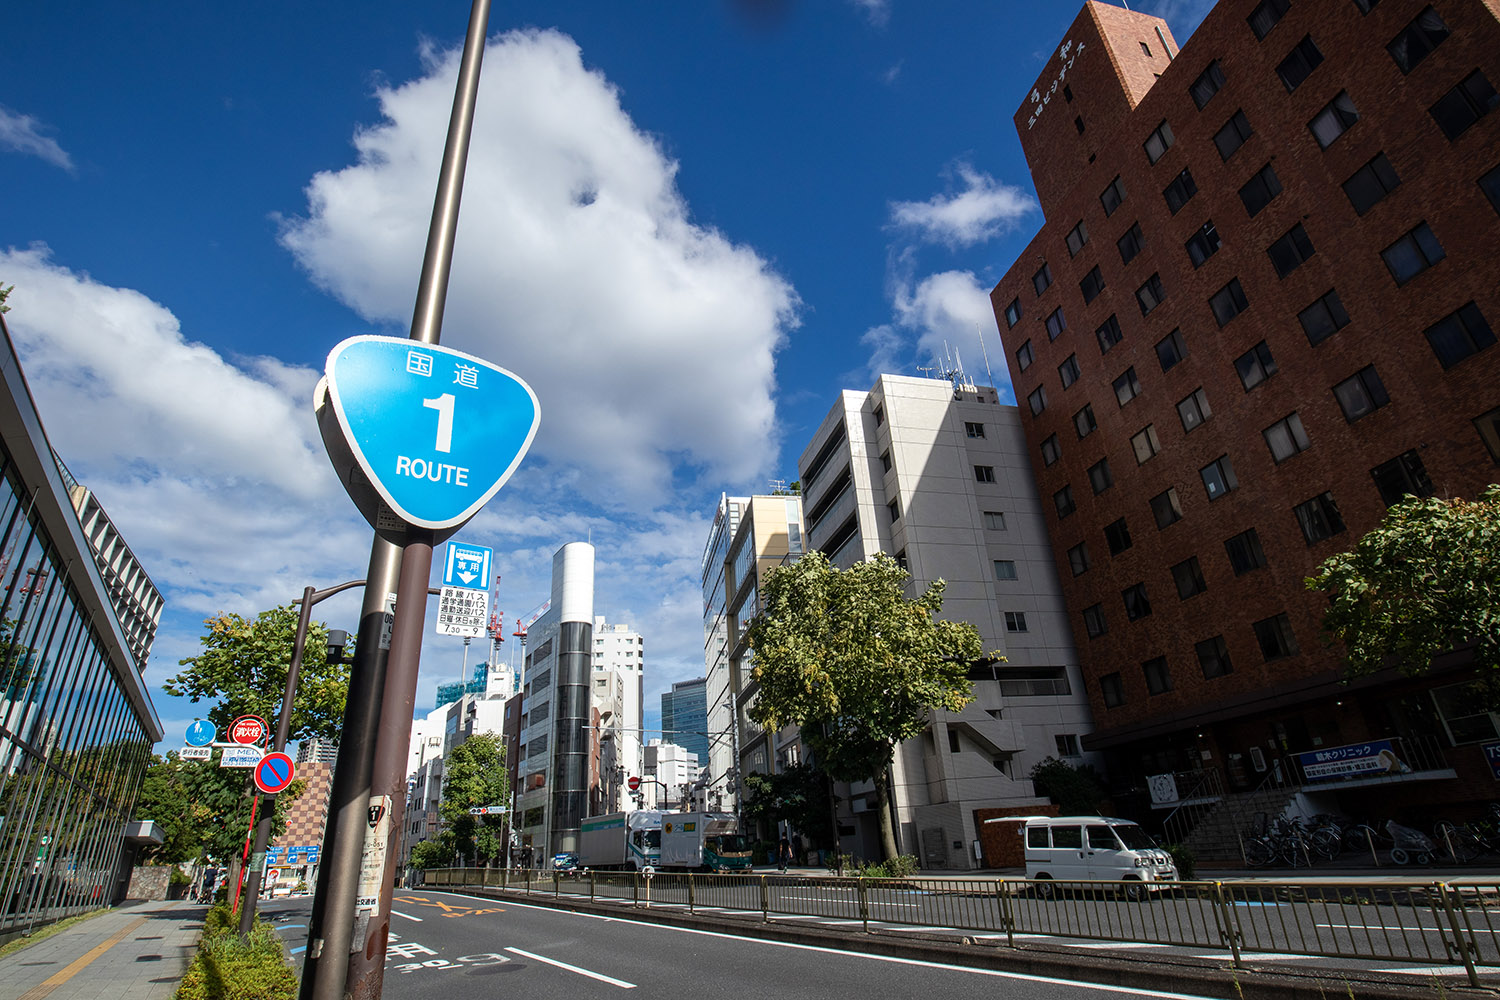 管理者が変わる境目で状況が一変することもある日本の道路事情